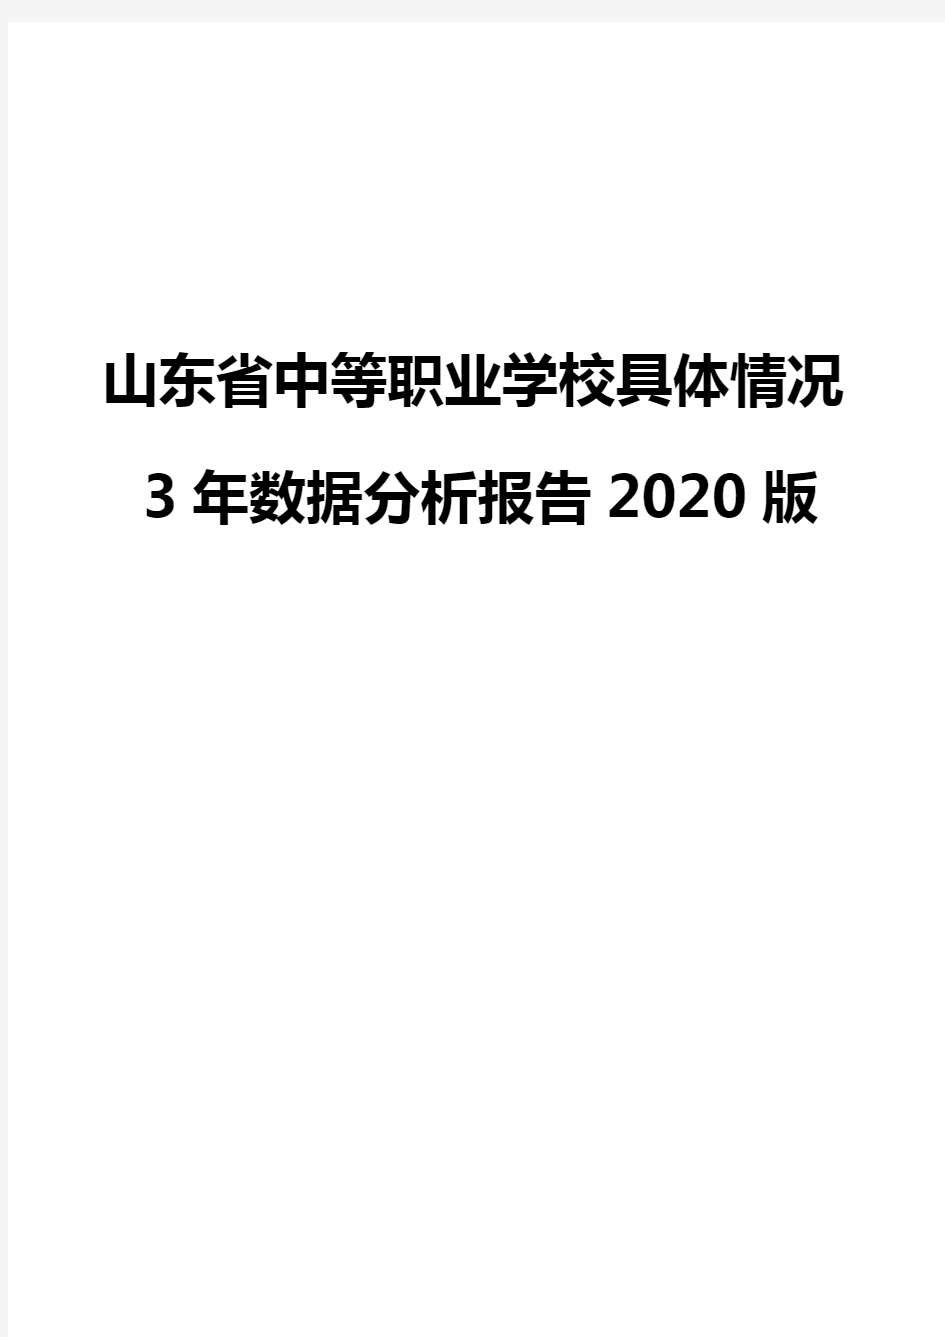 山东省中等职业学校具体情况3年数据分析报告2020版